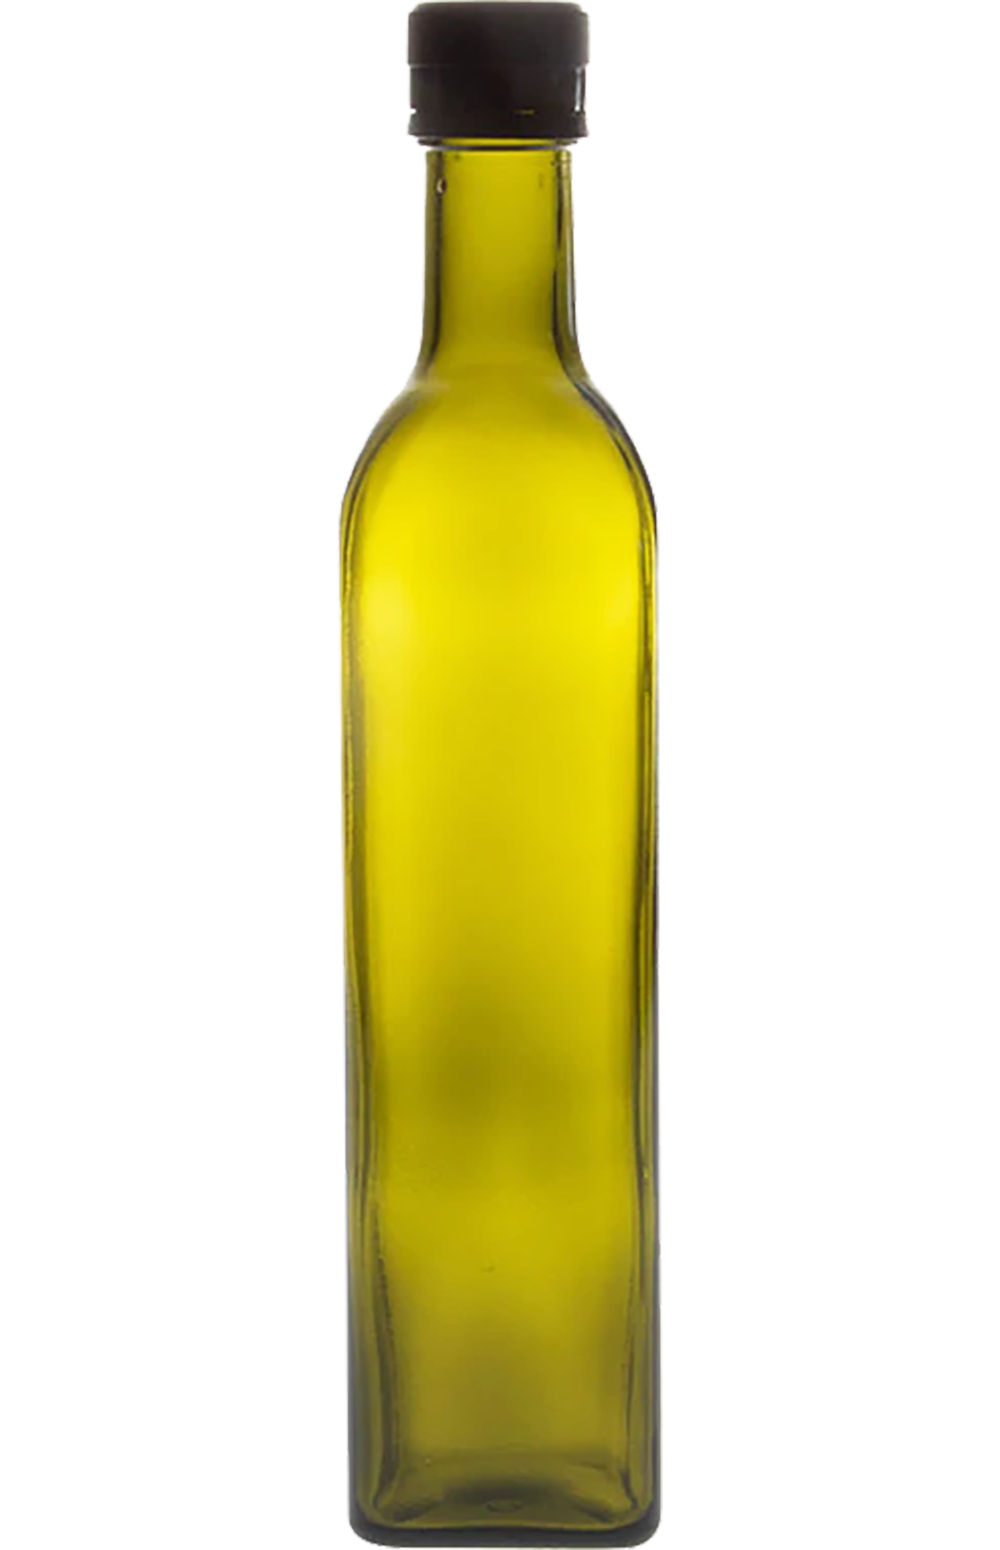 DHOUKAR olive oil